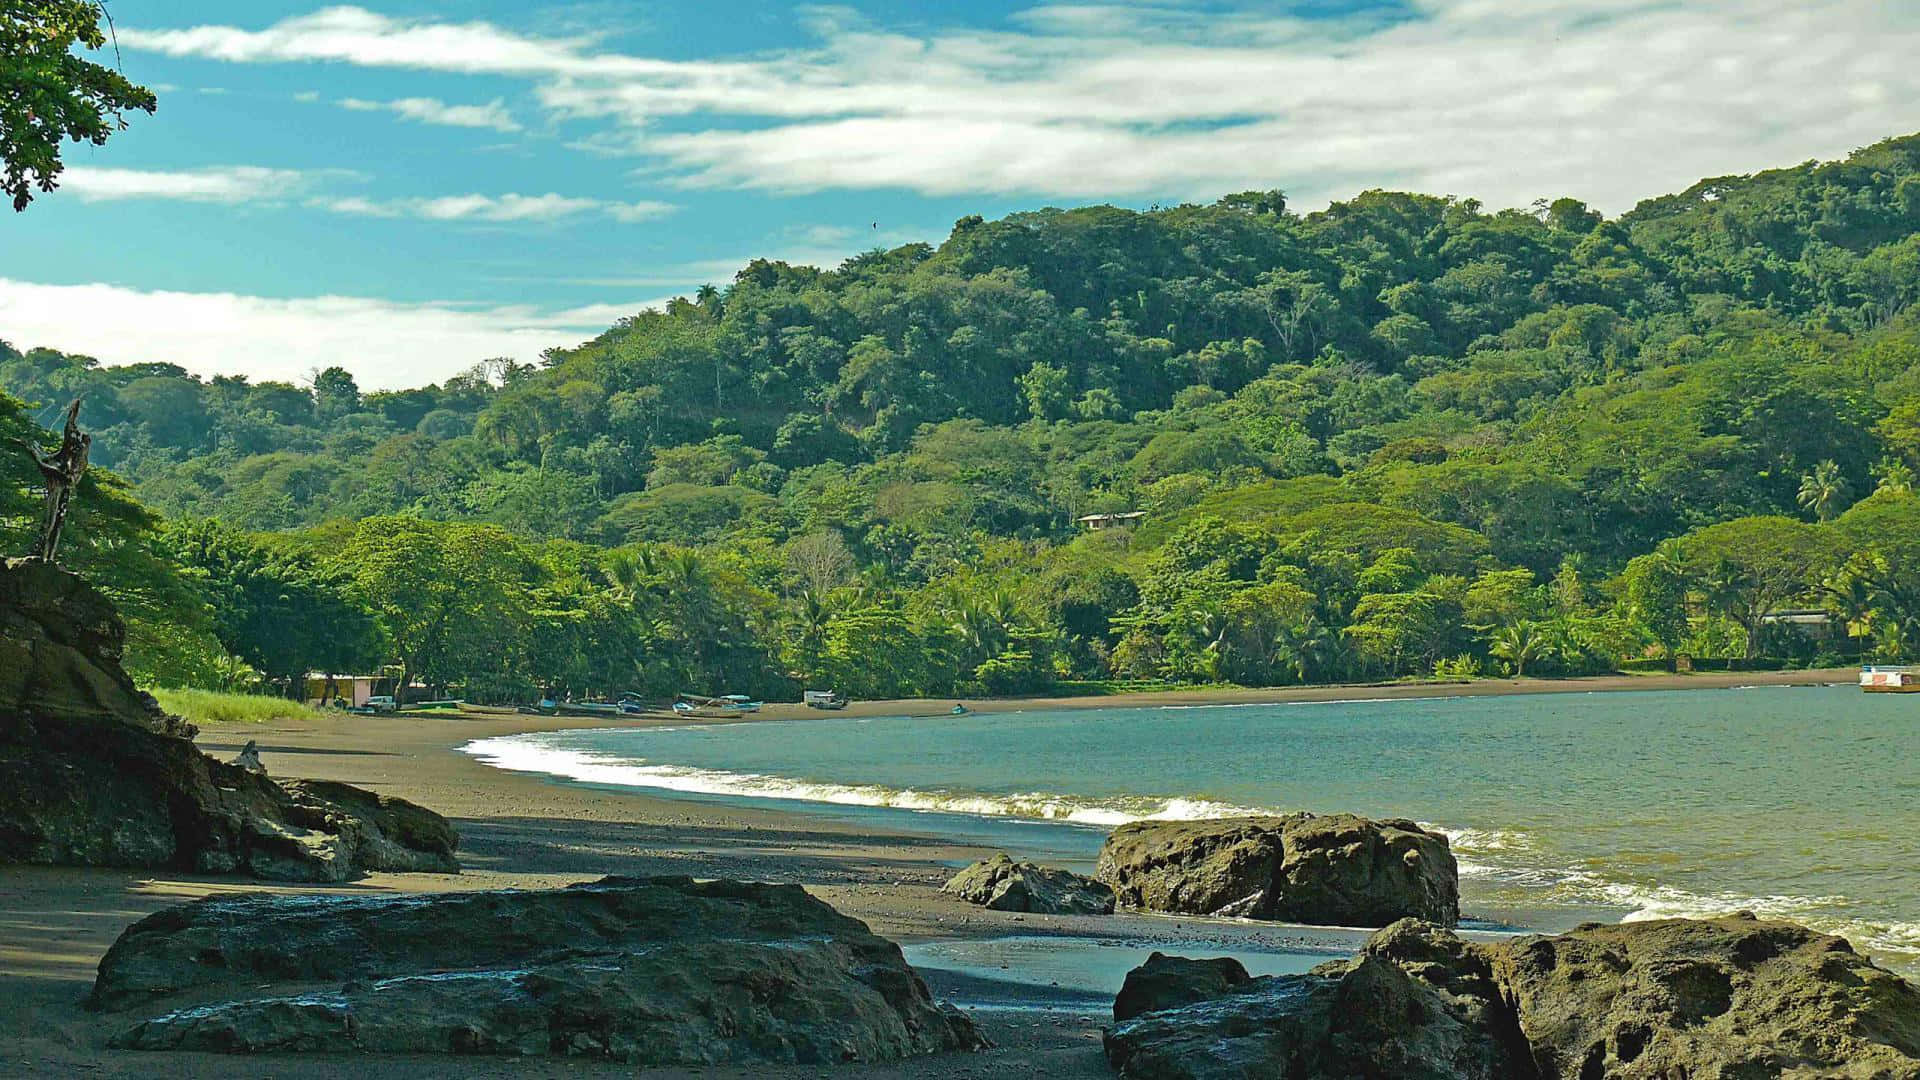 Jungle Trail in Costa Rica